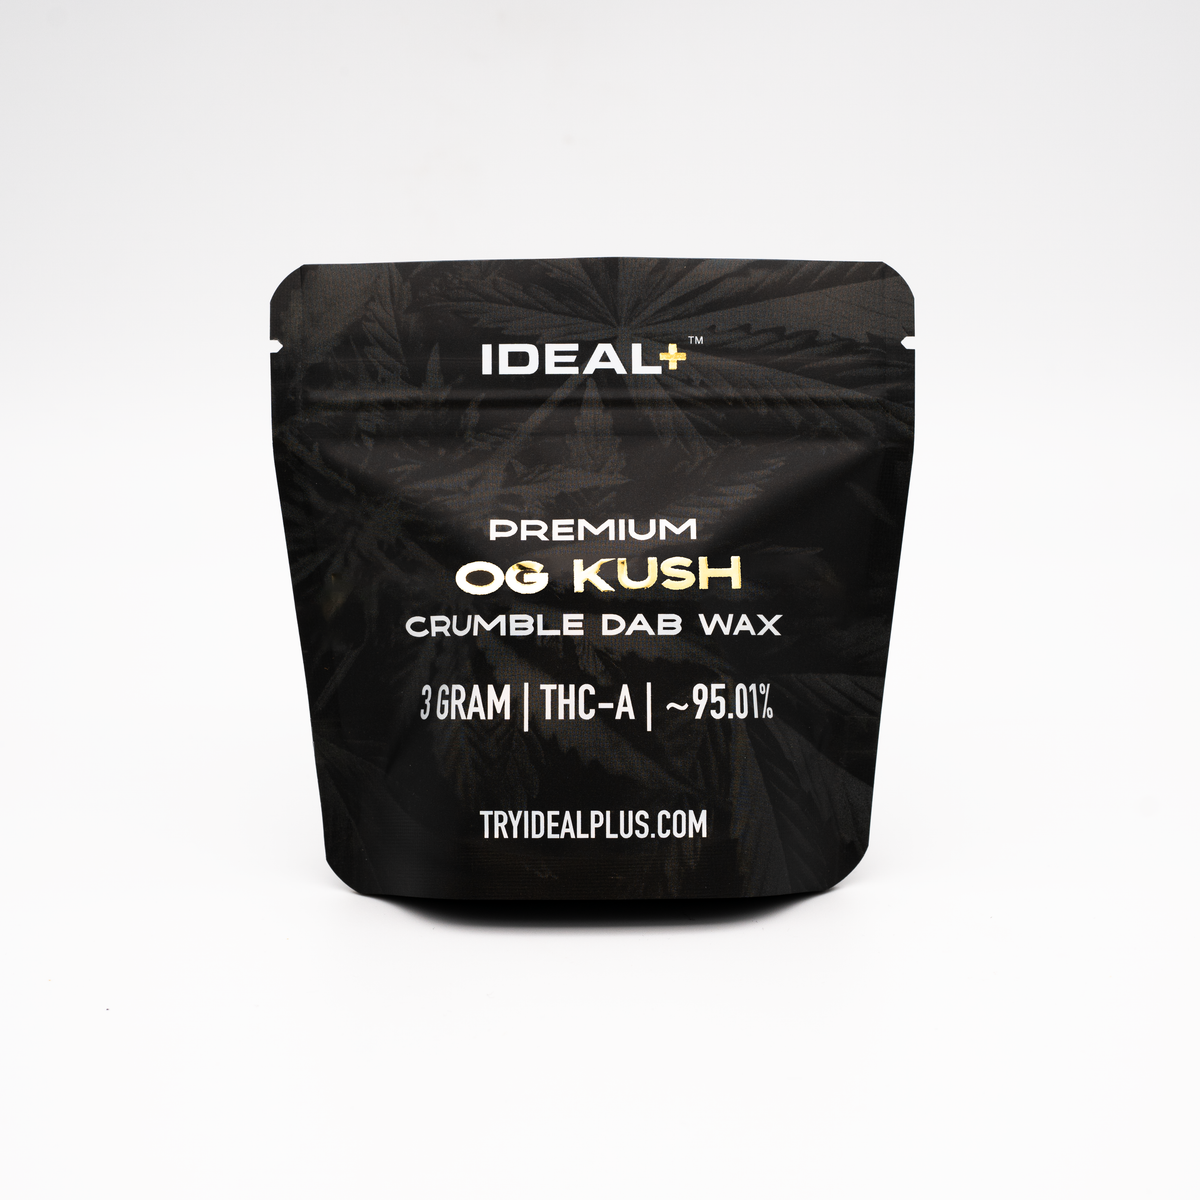 OG Kush 96.66% THCa Crumble Dab Wax 3g